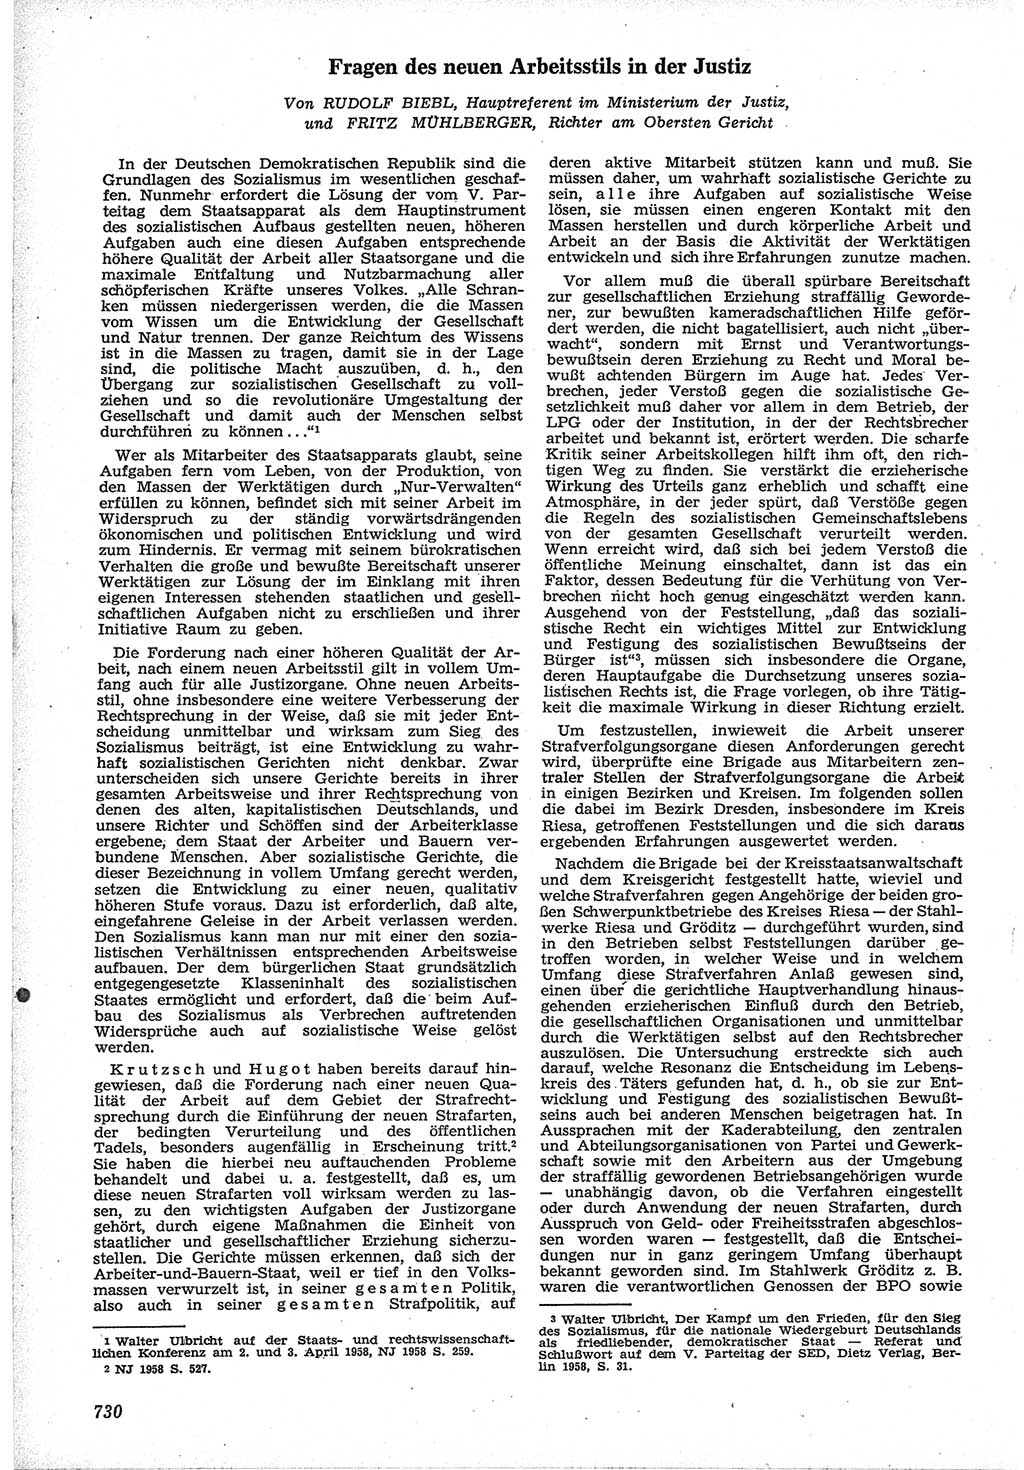 Neue Justiz (NJ), Zeitschrift für Recht und Rechtswissenschaft [Deutsche Demokratische Republik (DDR)], 12. Jahrgang 1958, Seite 730 (NJ DDR 1958, S. 730)